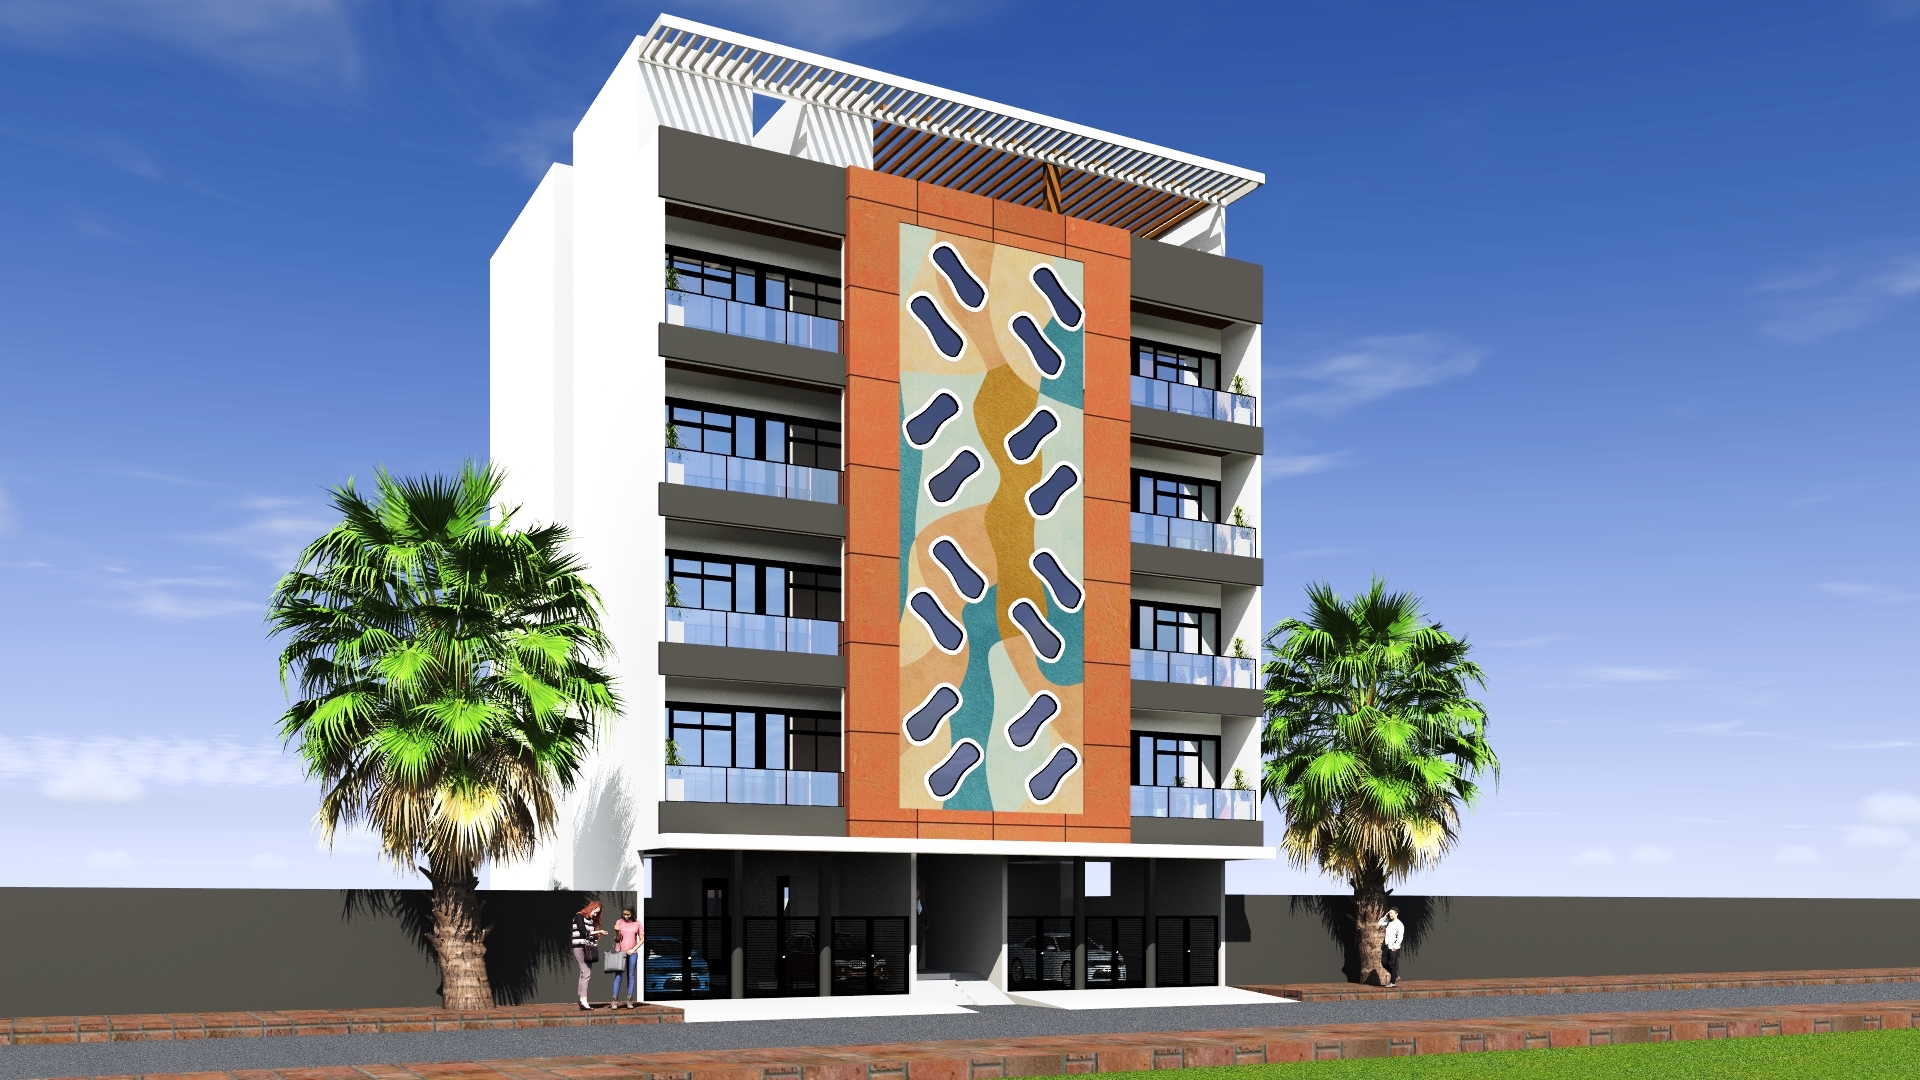 Concepts de maisons et résidences - Cabinet d'architecture, Malick Mbow - Archi Concept International - Dakar, Sénégal